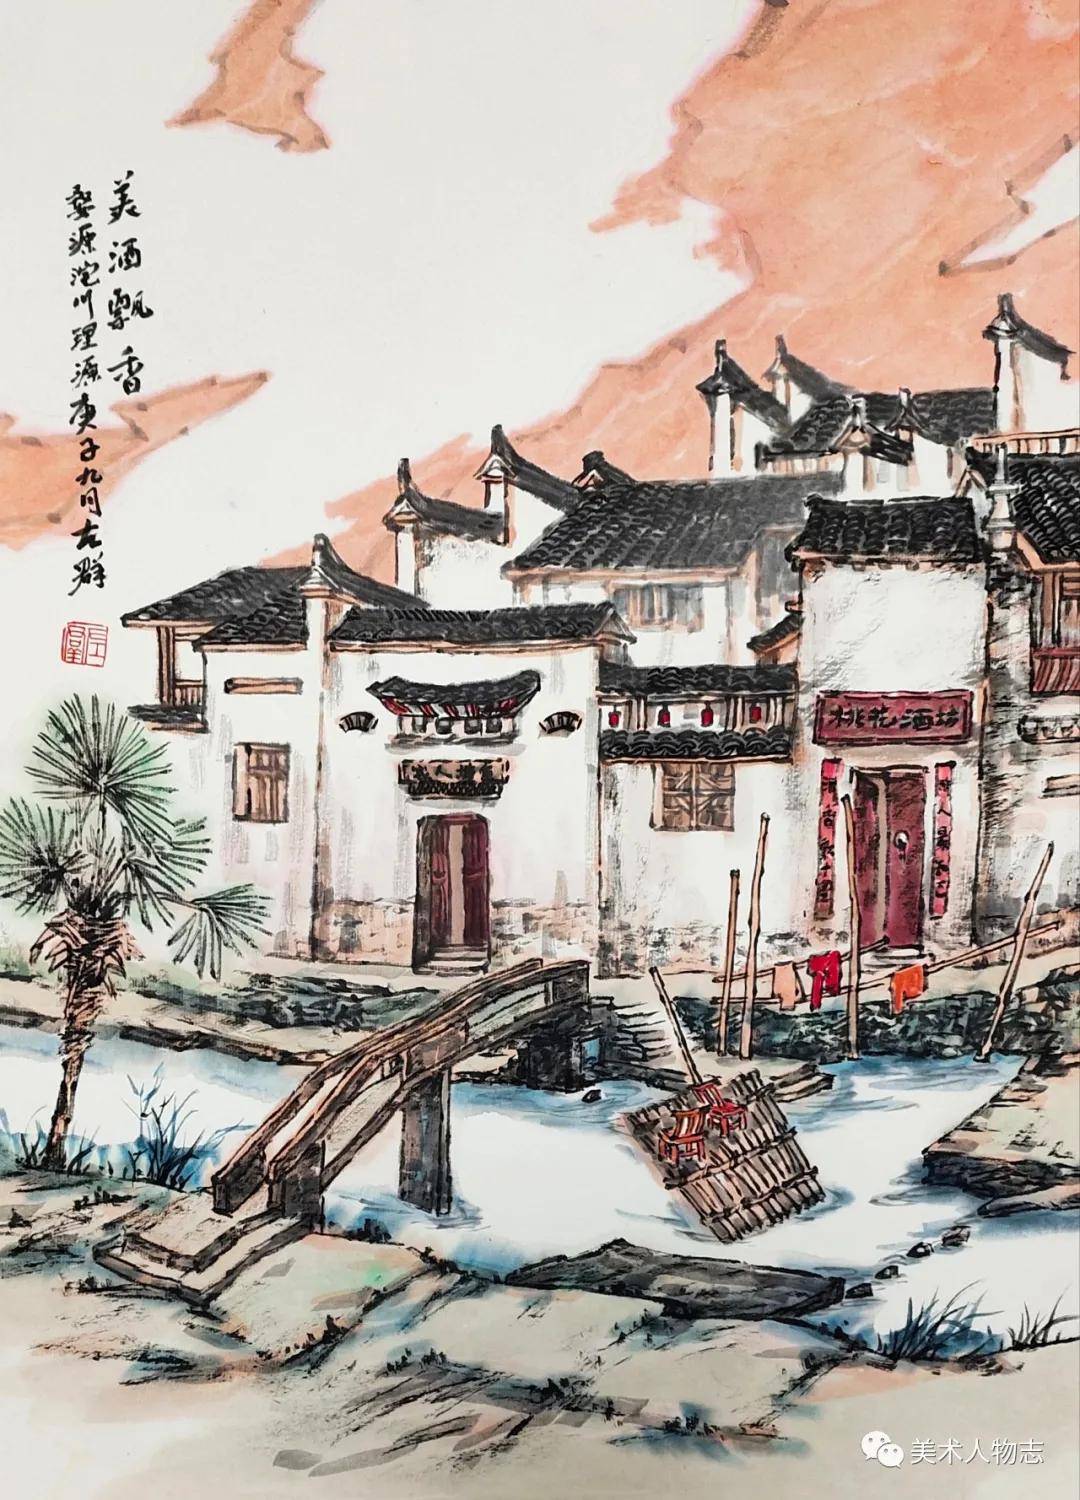 中国美术人物志——左群婺源写生作品